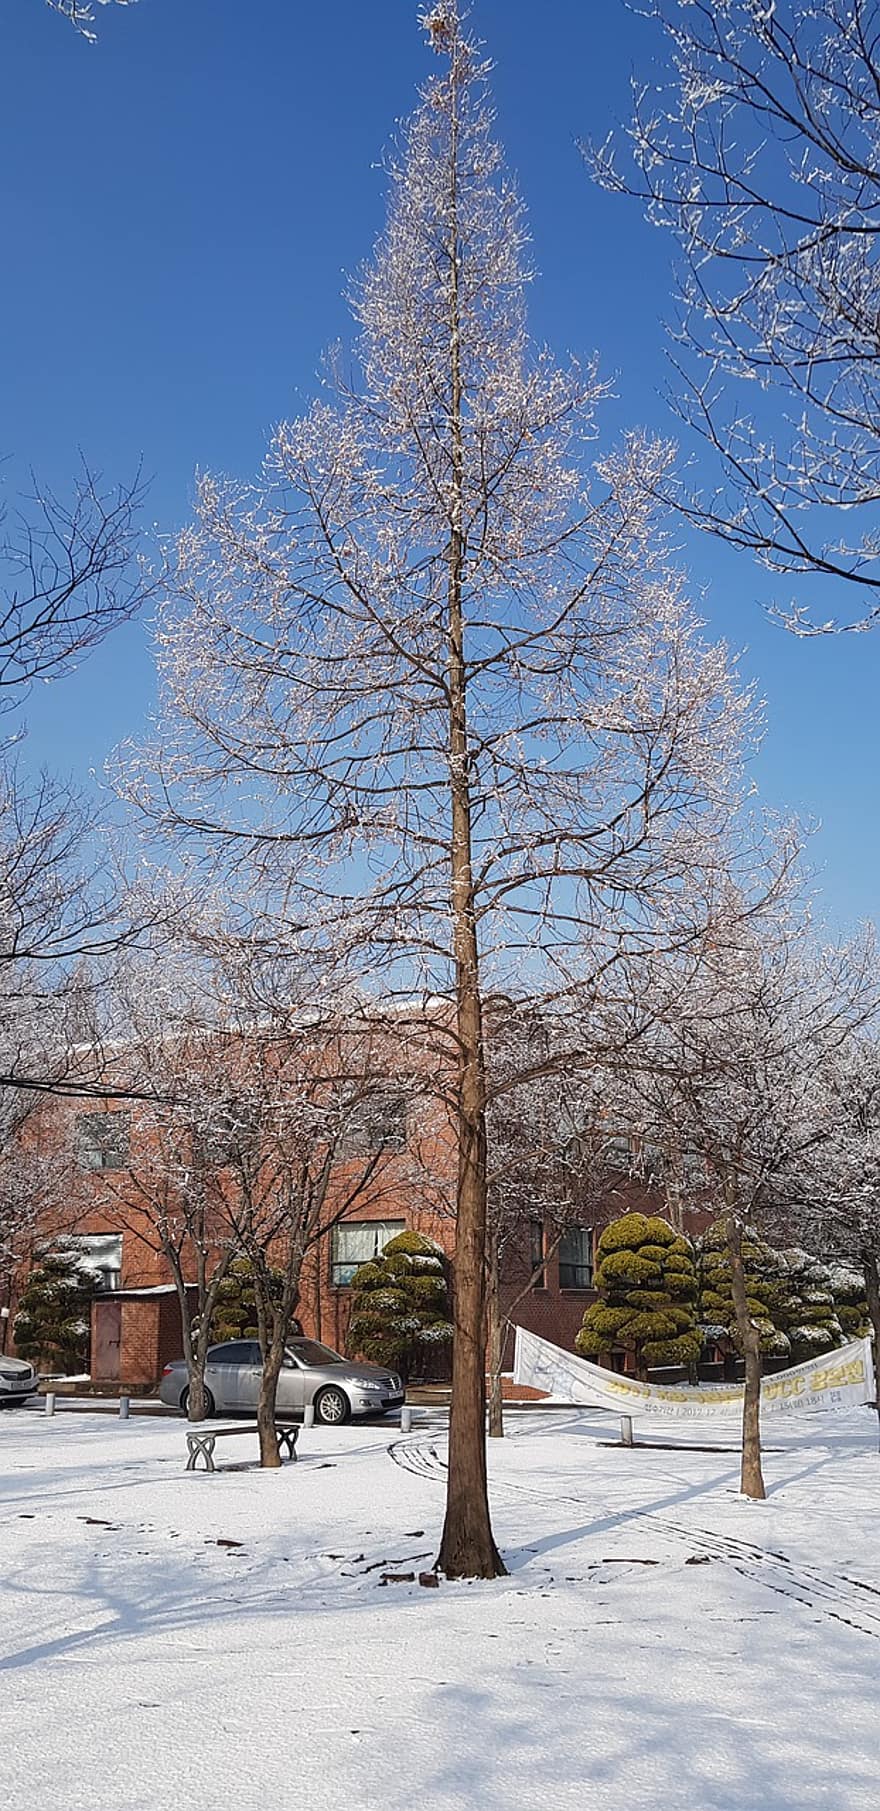 Baum, Winter, Jahreszeit, Schnee, hwaseong, Korea, Blau, Ast, ländliche Szene, Landschaft, Wald